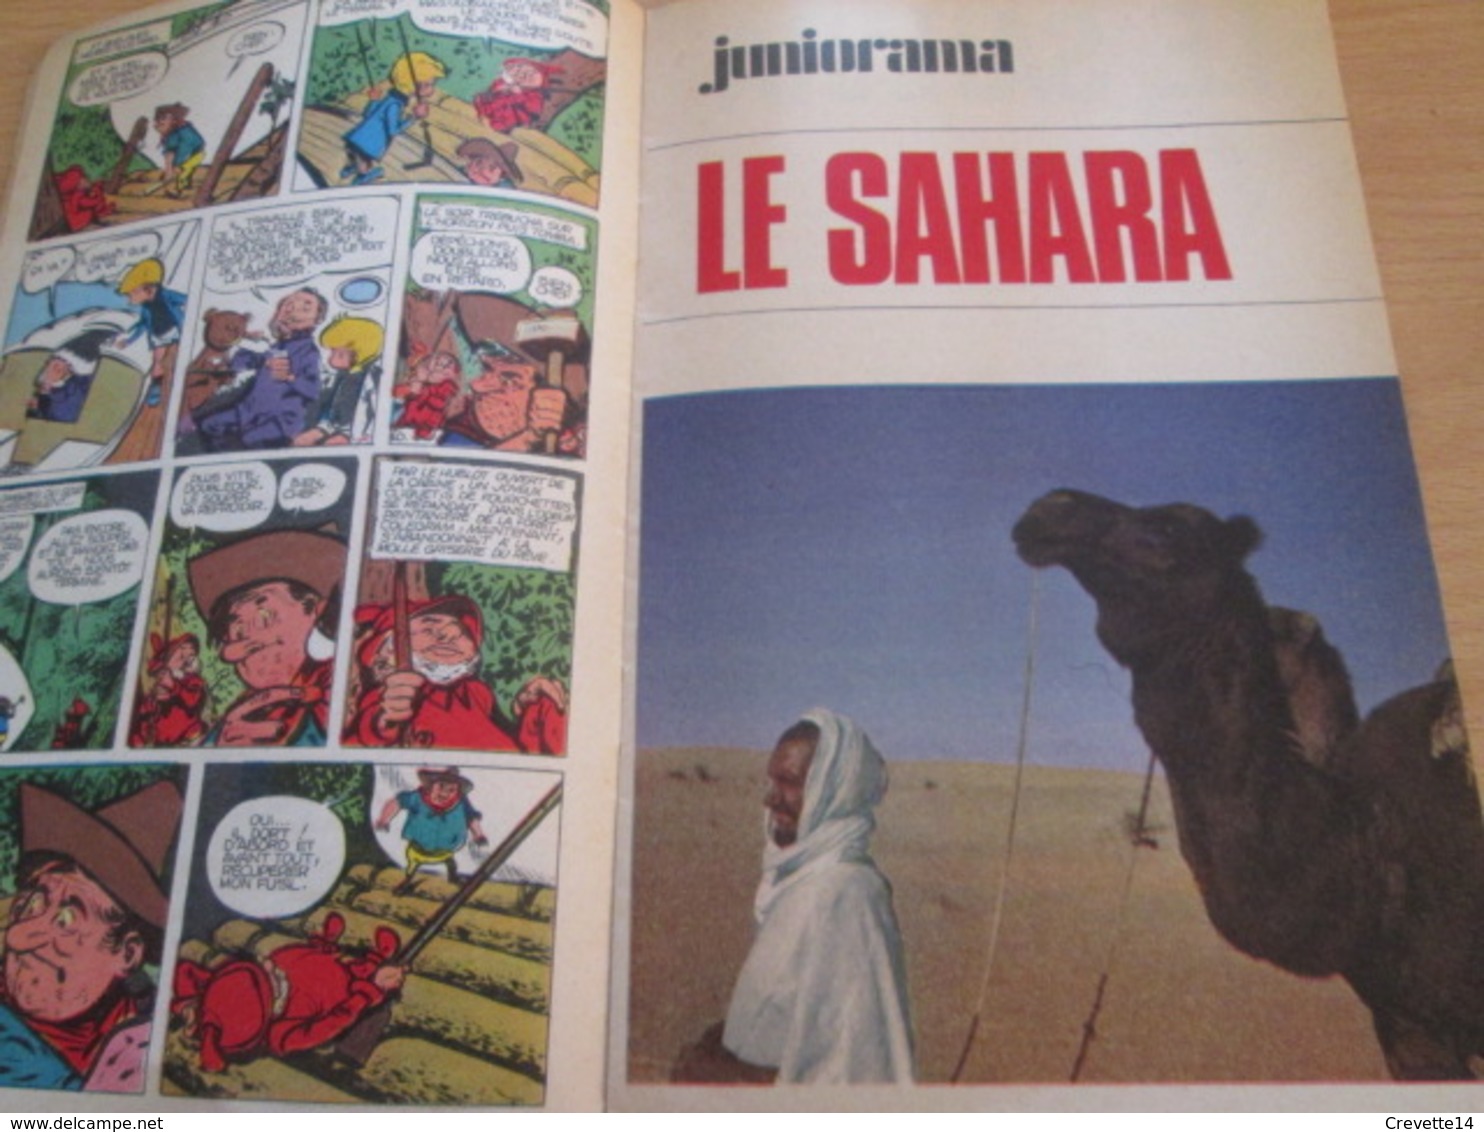 Petite revue publicitaire A5 année 1966 n°6 TOTAL JOURNAL incluant BD inédité de SIRIUS / vu à 40€ chez I-B